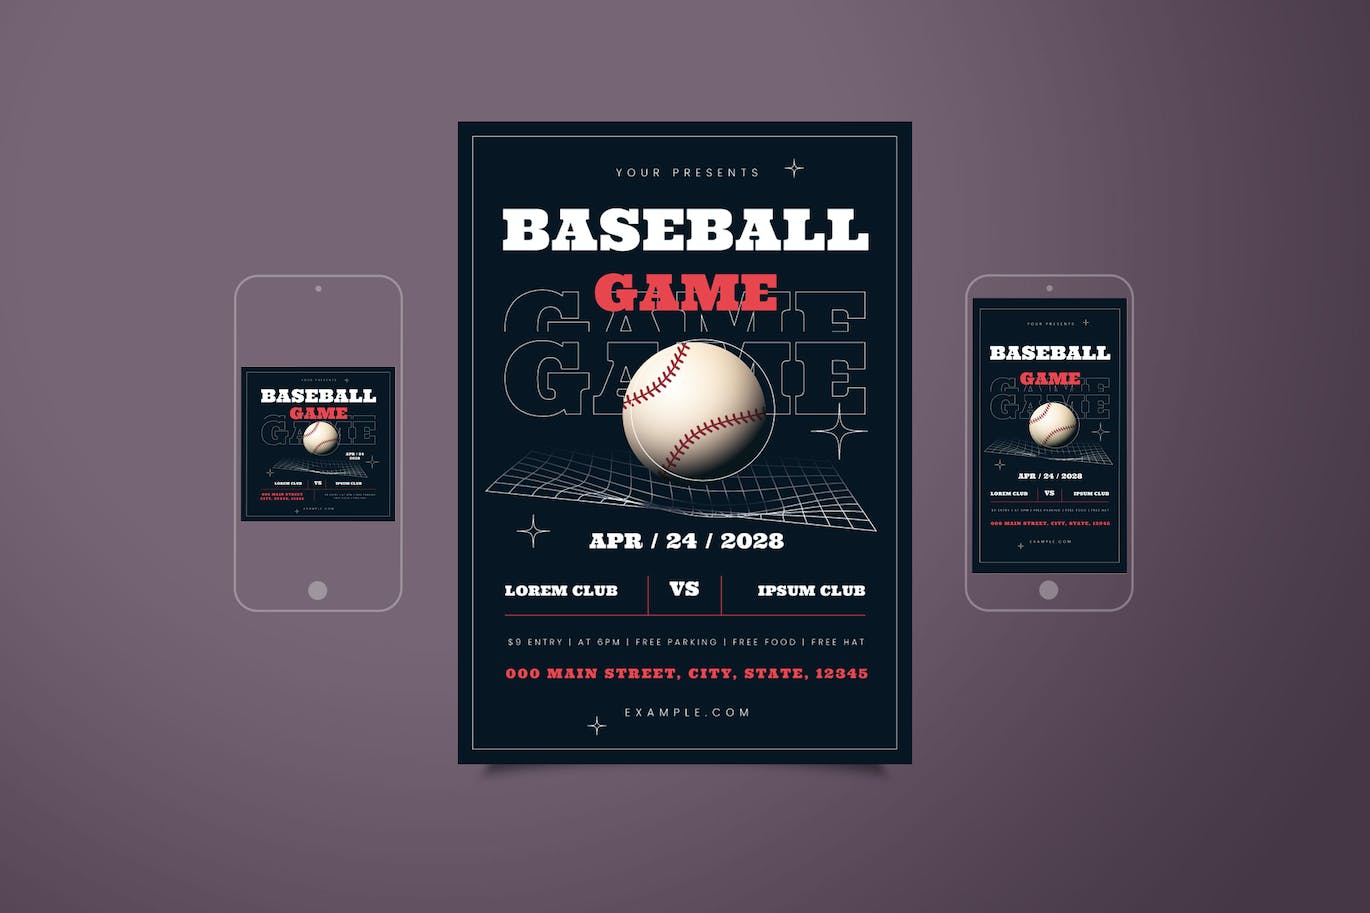 棒球比赛活动海报素材 Baseball Game Flyer Set 设计素材 第1张